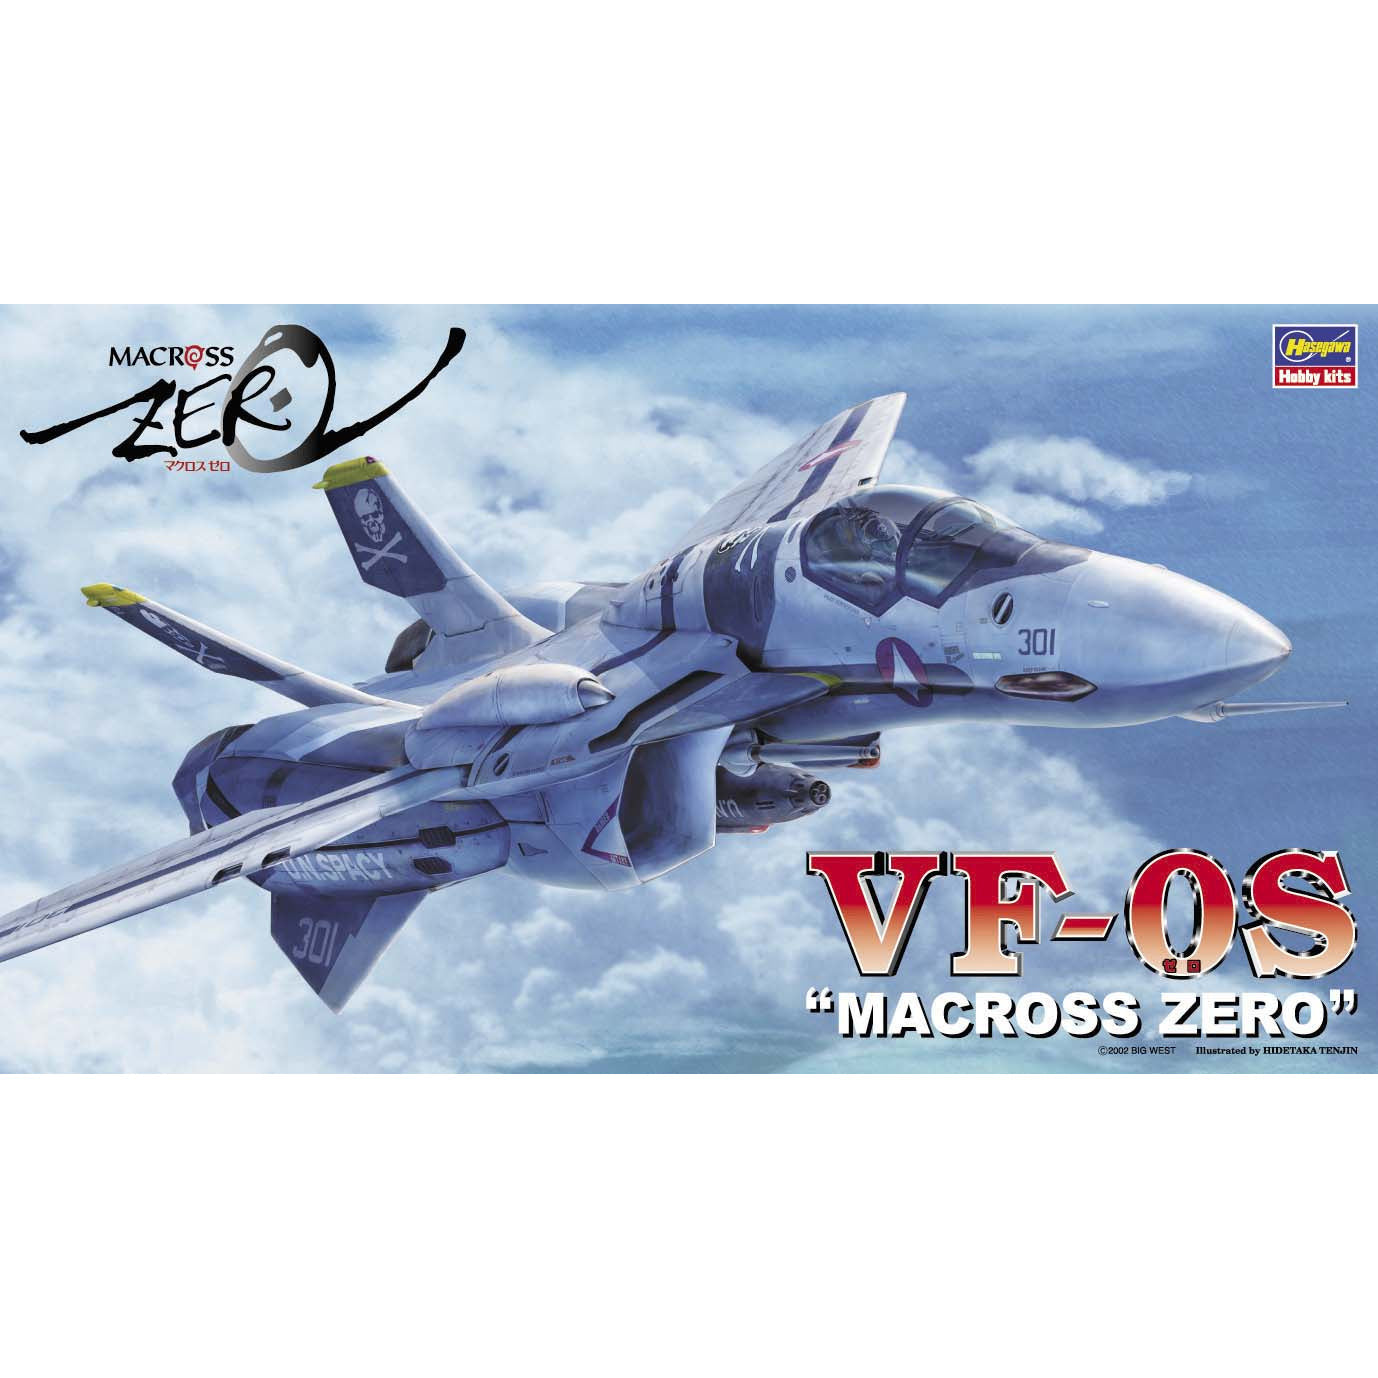 Macross Zero VF-0S 1/72 #65715 by Hasegawa